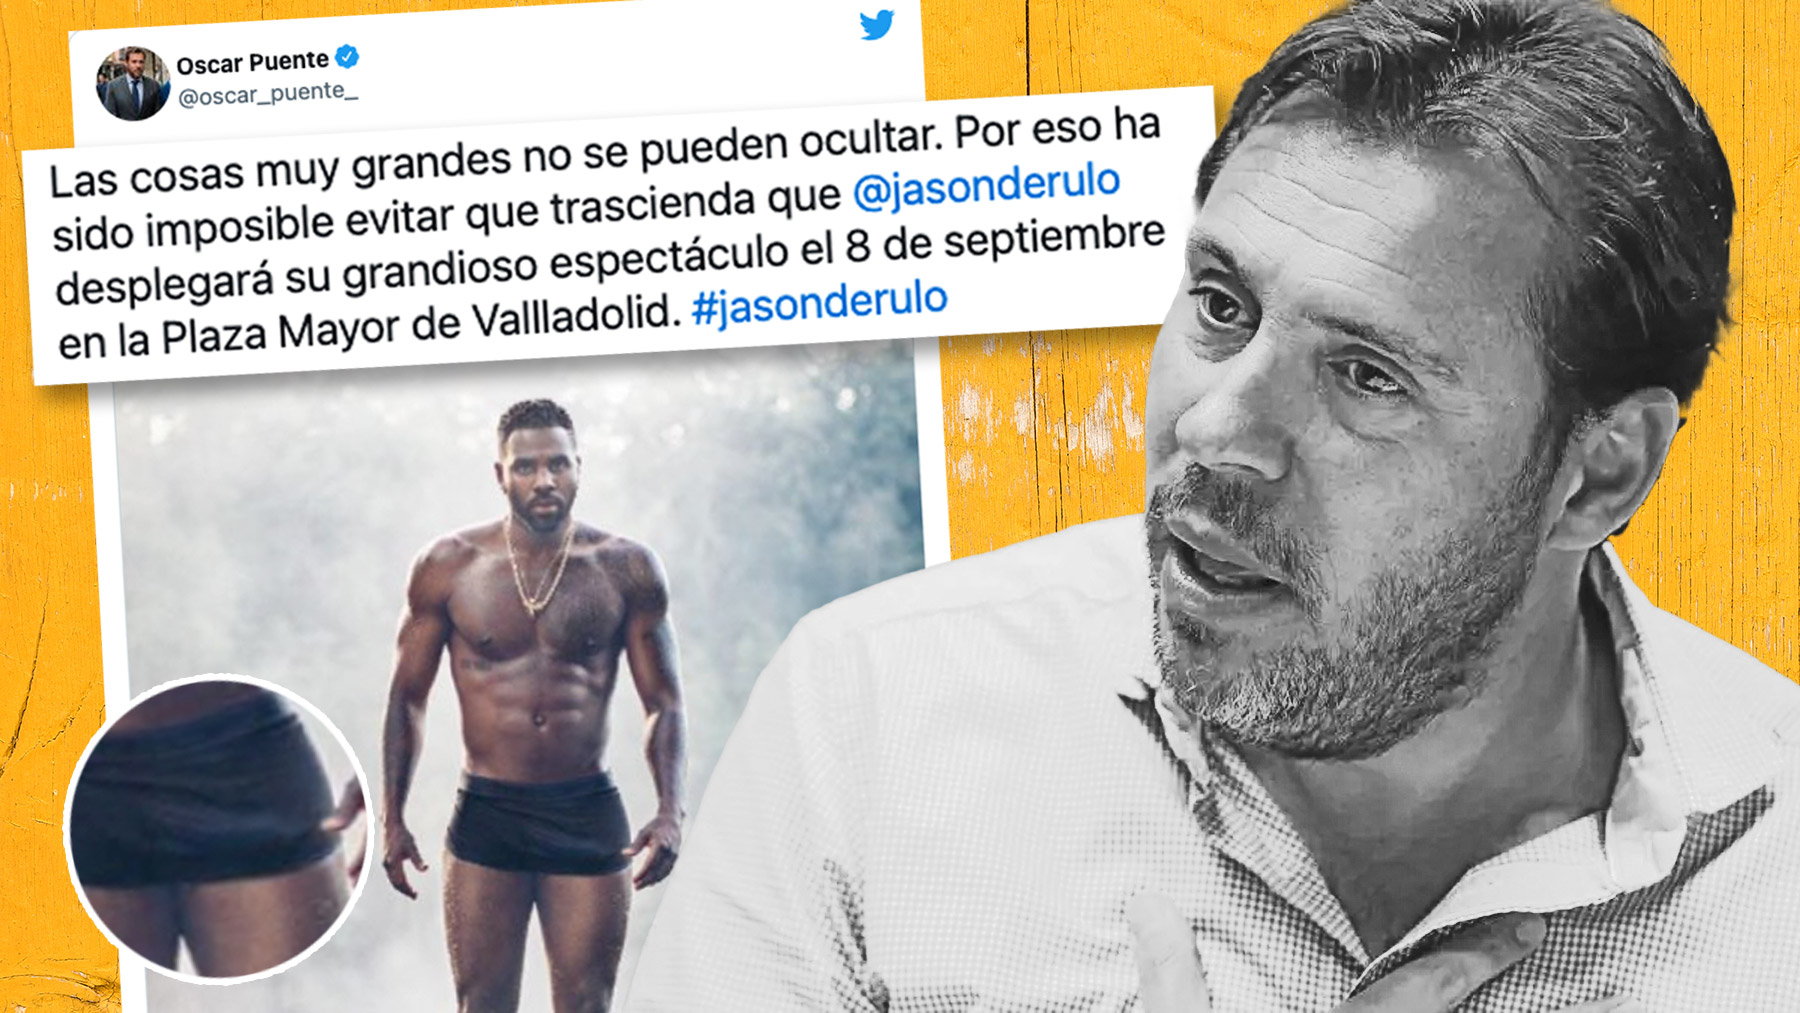 El socialista Óscar Puente saca a pasear su mal gusto elogiando los ‘atributos’ de Jason Derulo